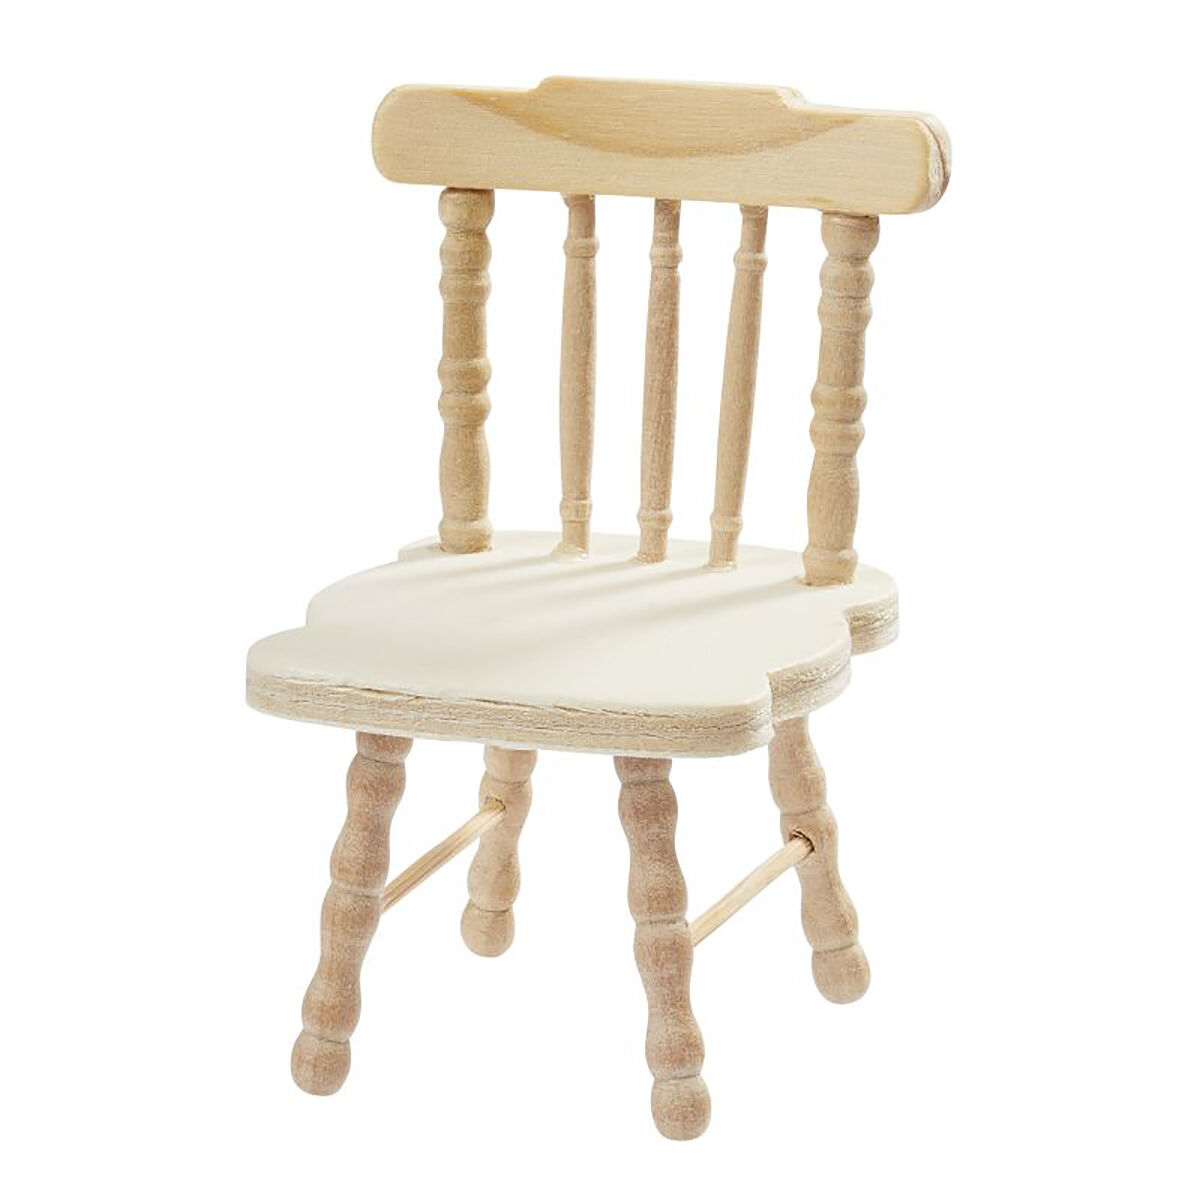 NEU Miniatur-Holz-Stuhl, Gre 4,5 x 5 x 7,5 cm